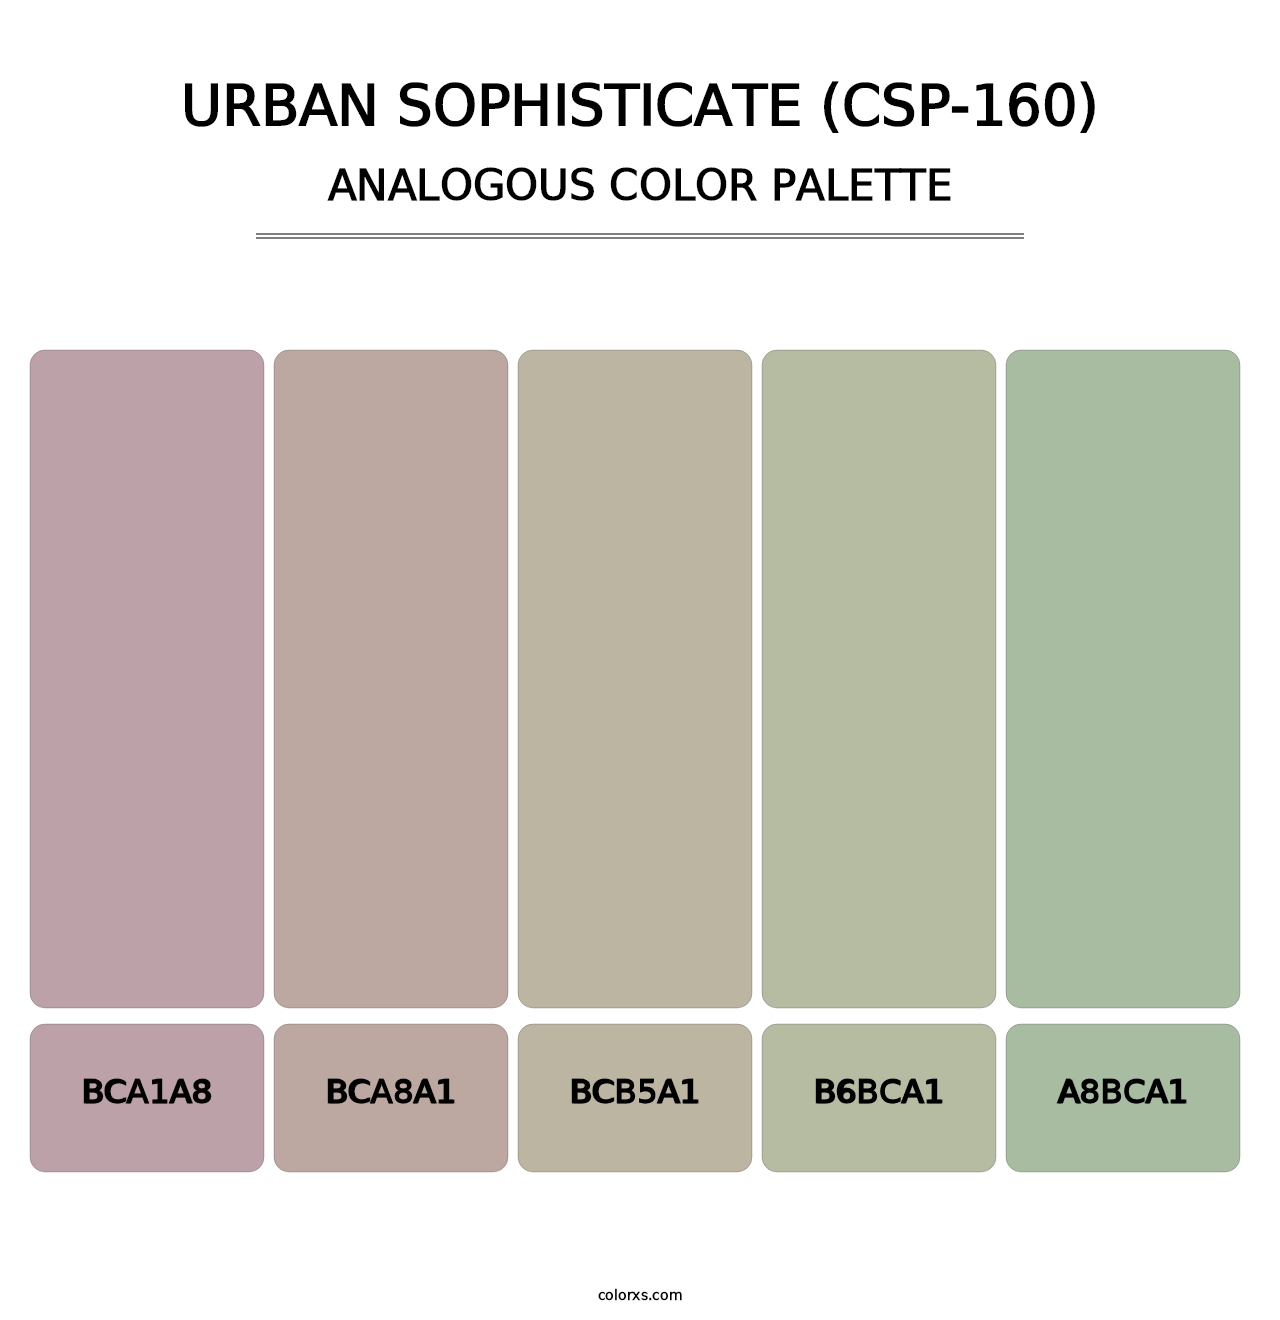 Urban Sophisticate (CSP-160) - Analogous Color Palette